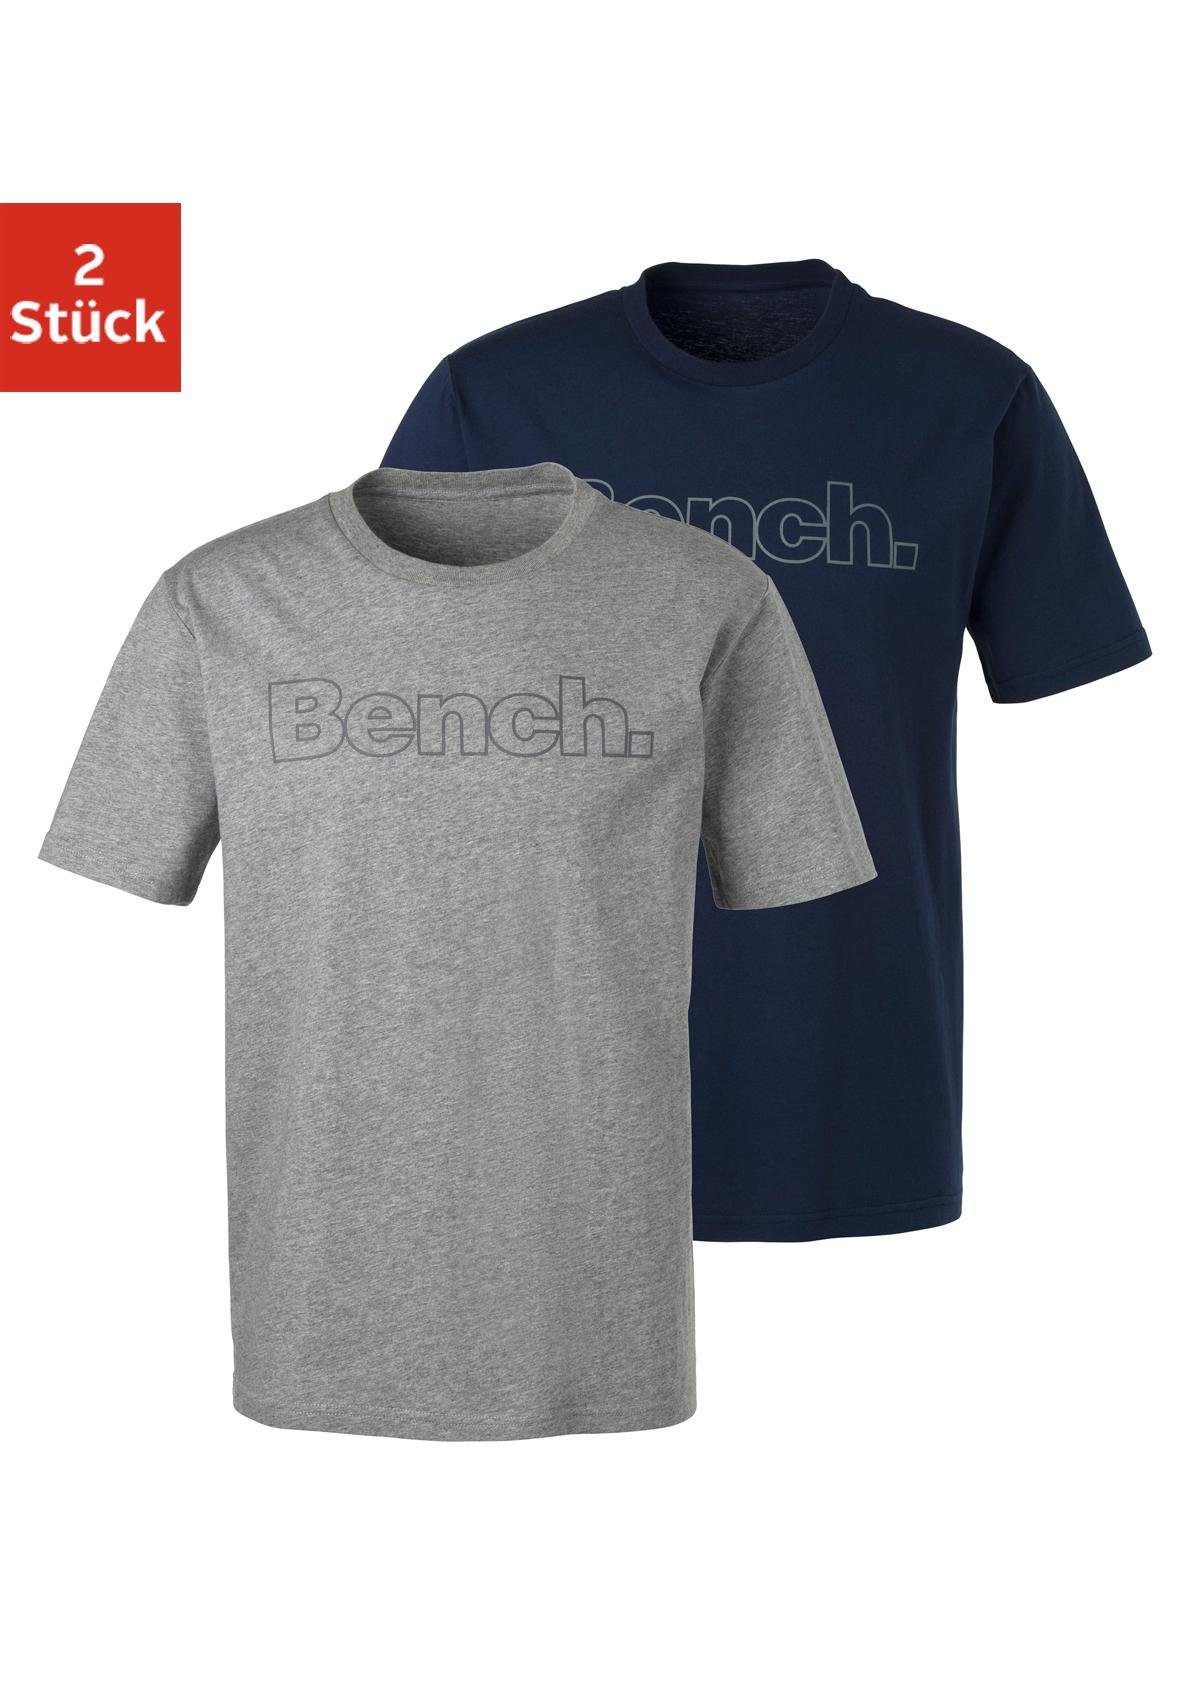 Bench. Loungewear T-Shirt (2-tlg) mit Bench. Print vorn grau-meliert, navy